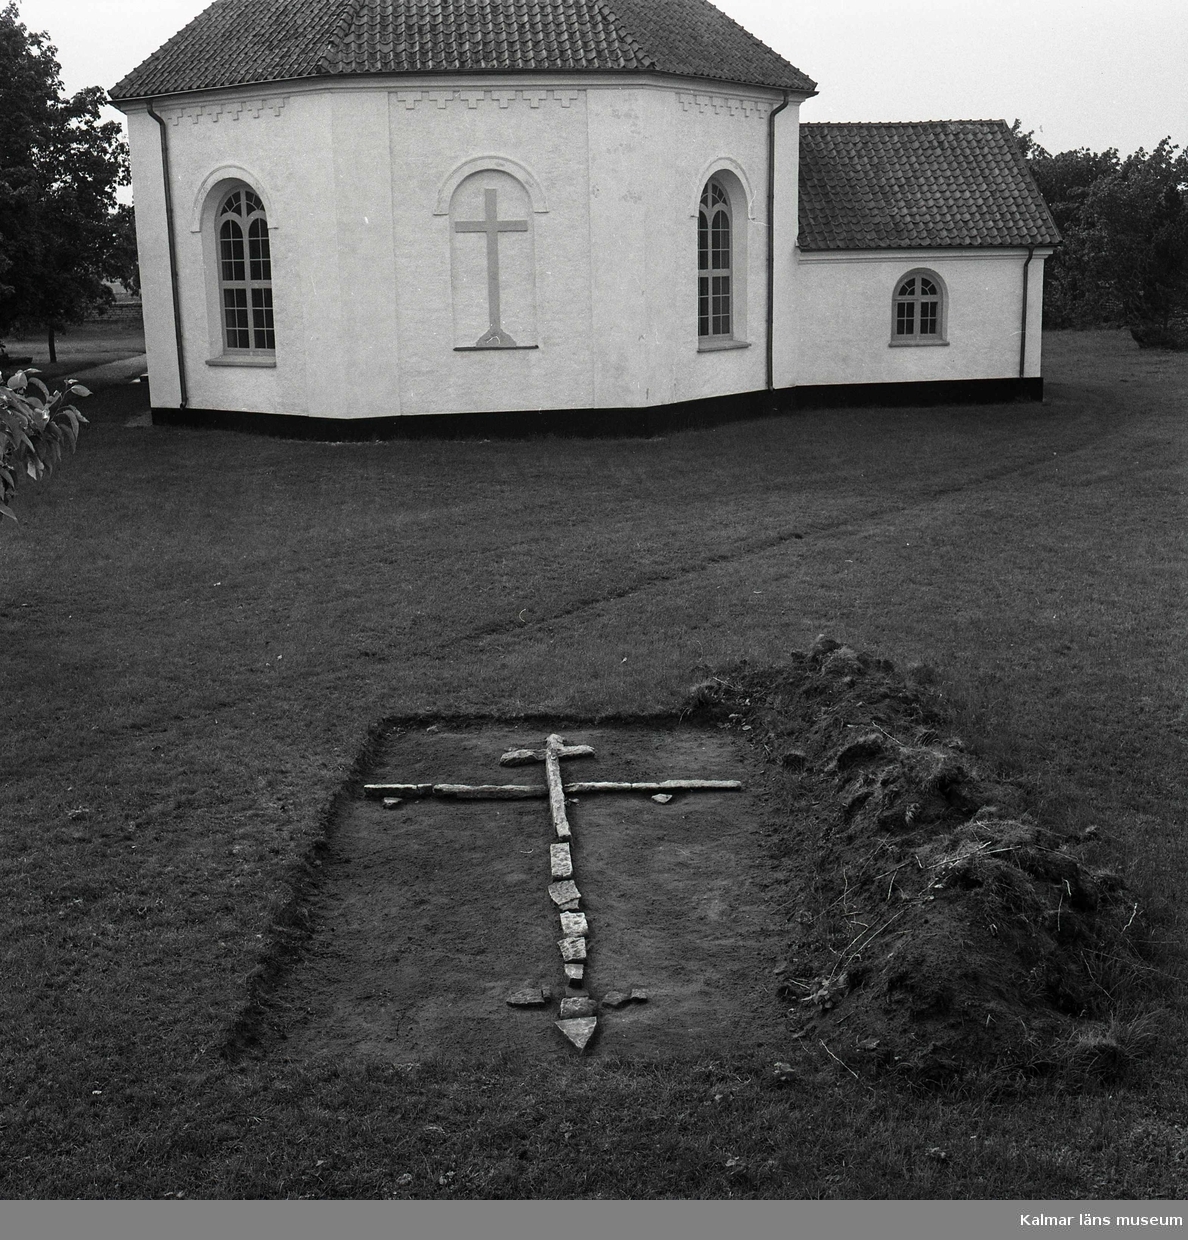 Frilagd markering av en gravplats, i form av stenar lagda i en korsformation, på Sandby kyrkogård. I bakgrunden syns kyrkan med koret närmast i bild.